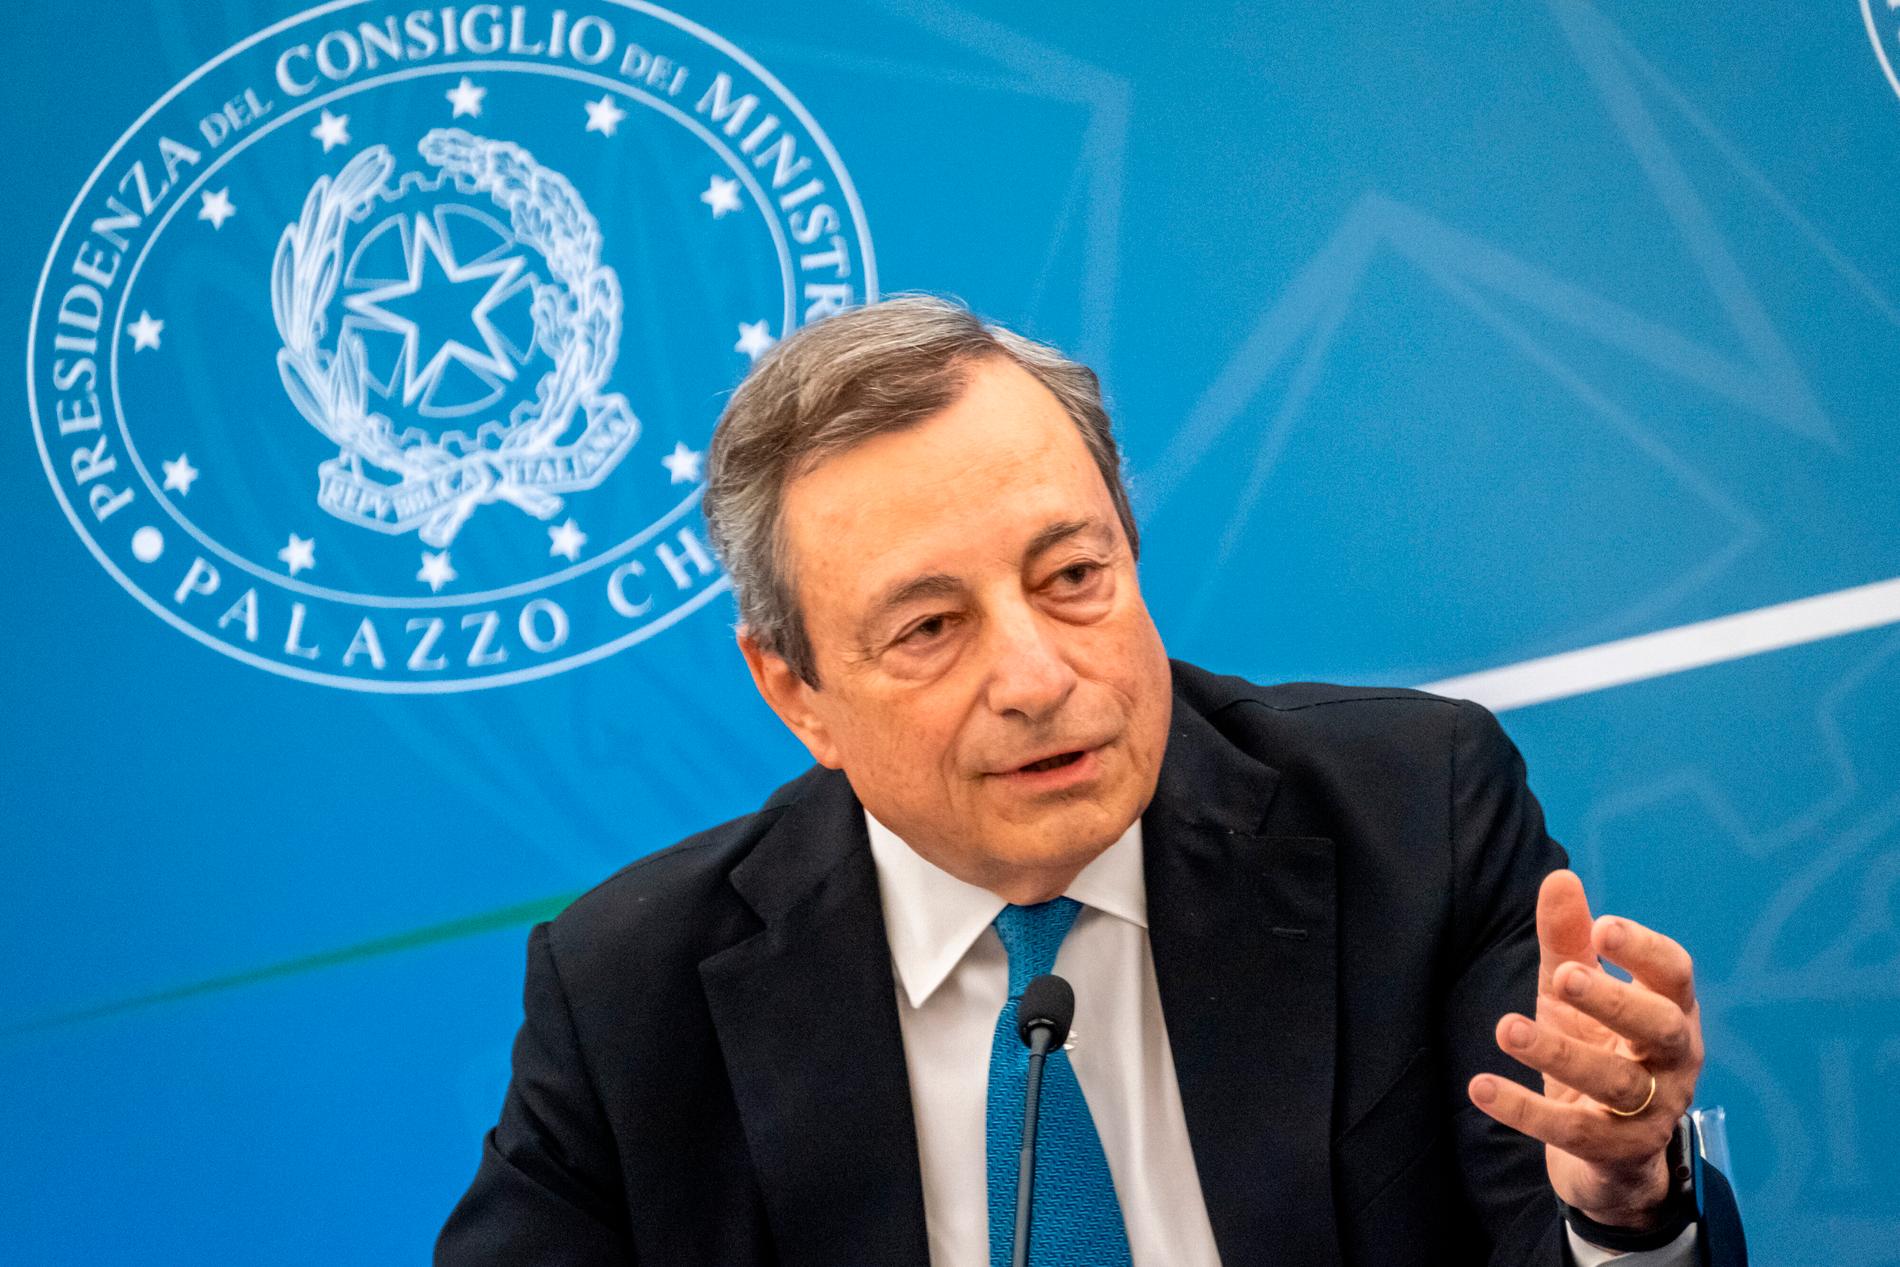 Premiärminister Mario Draghi har utlovat omedelbar nödhjälp på 54 miljoner kronor till de drabbade områdena.